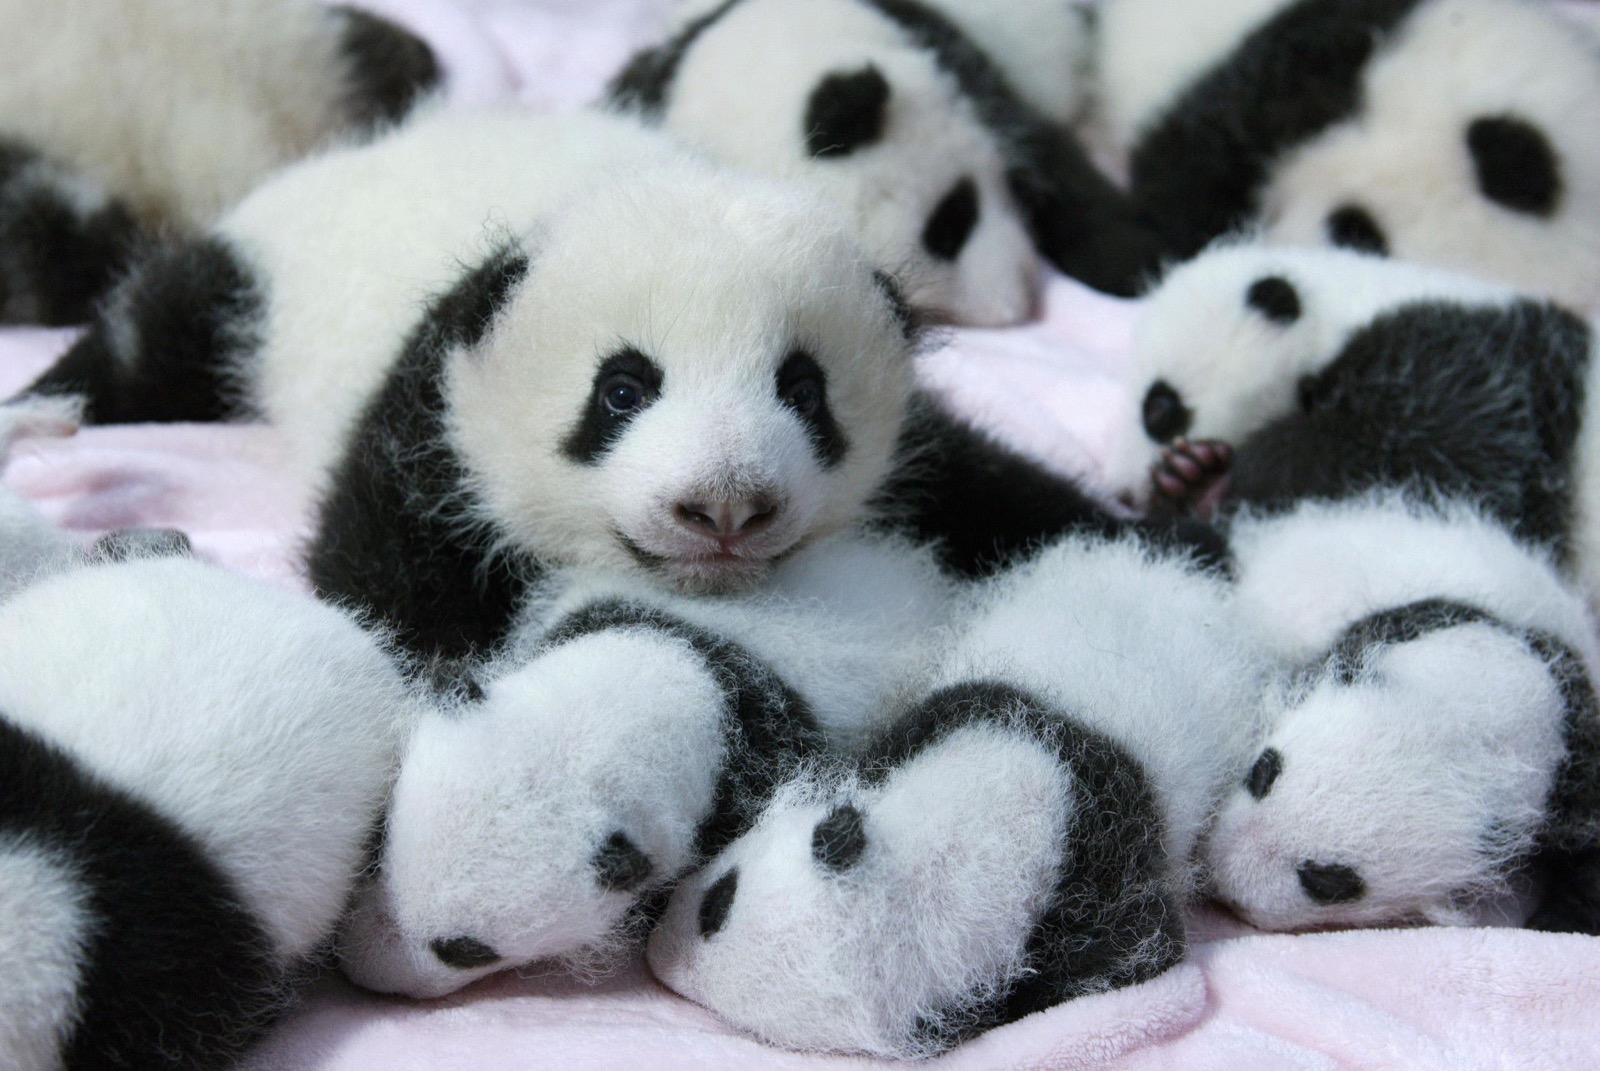 Giant panda cubs